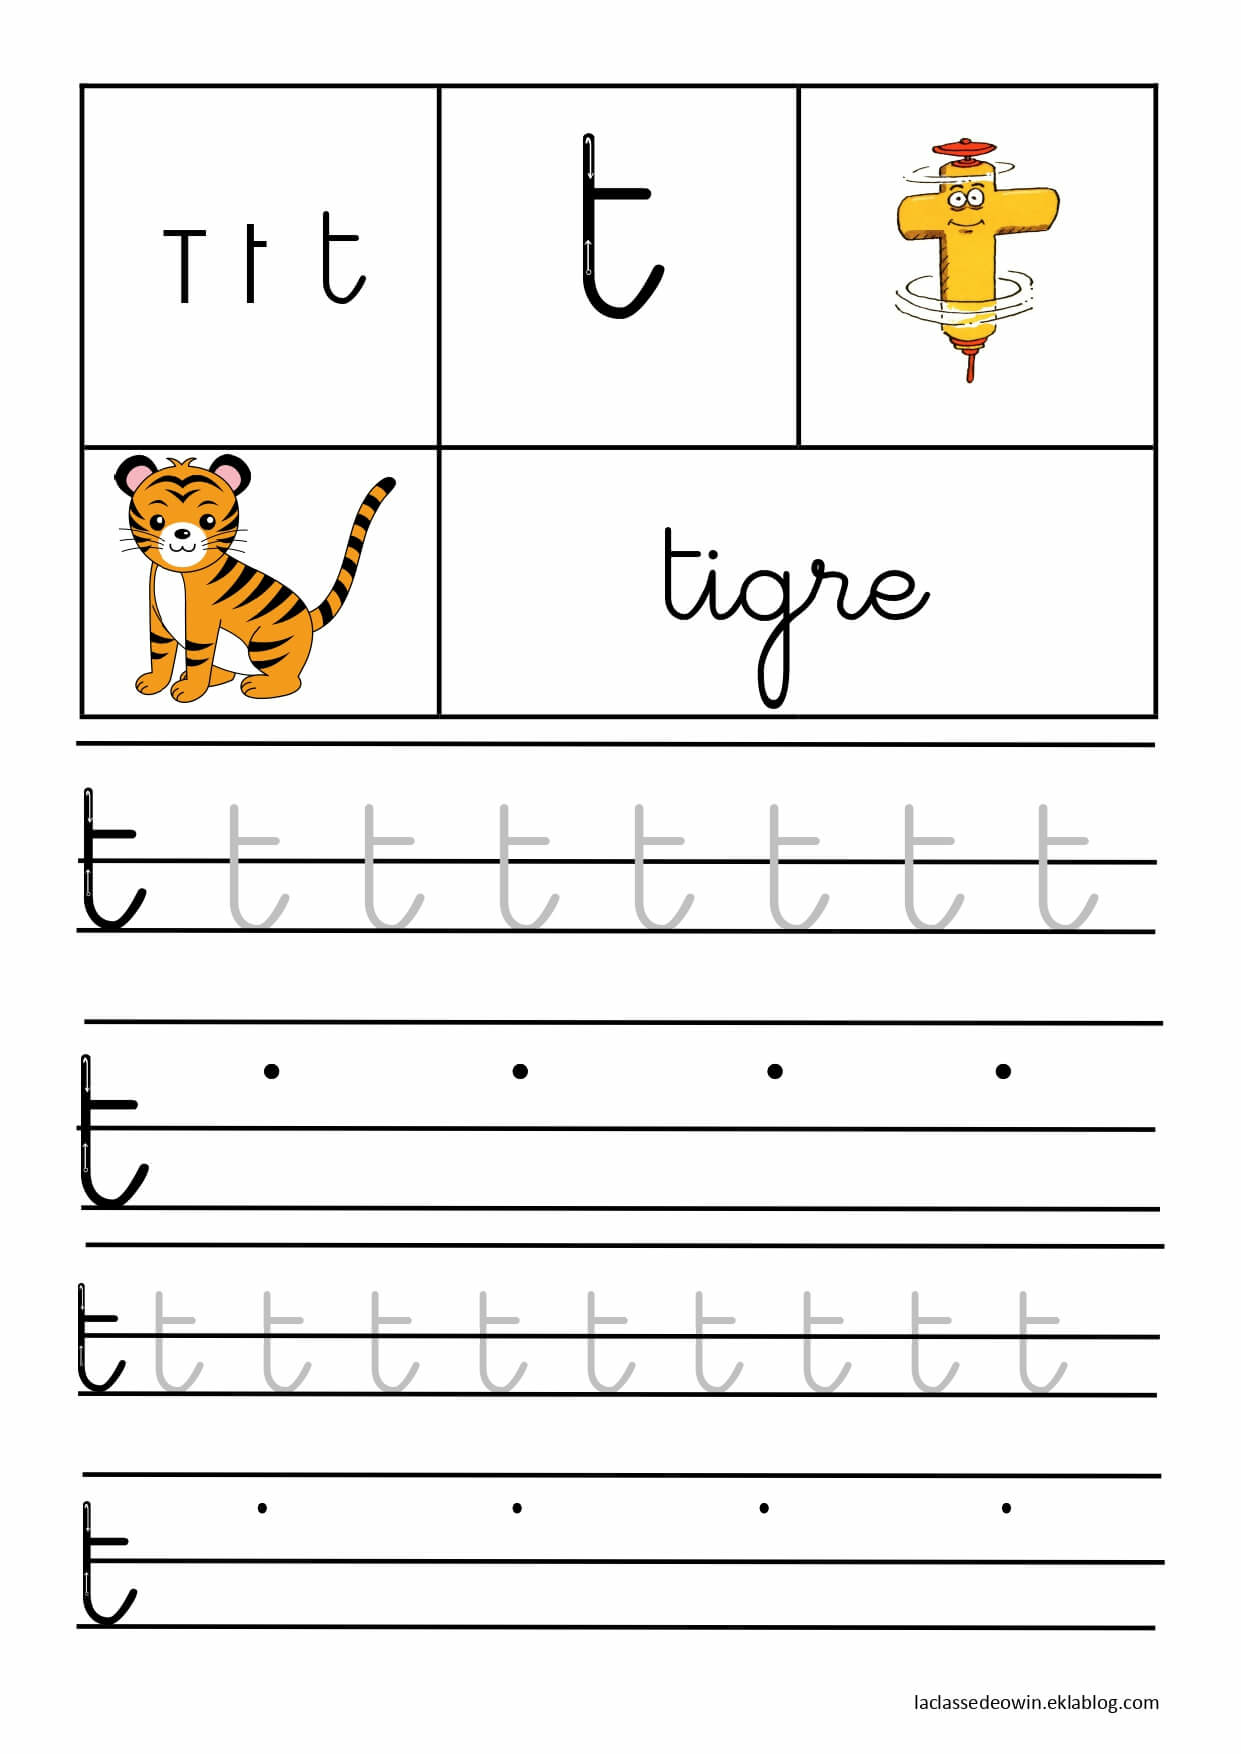   Lettre T pour tigre, écriture cursive GS 